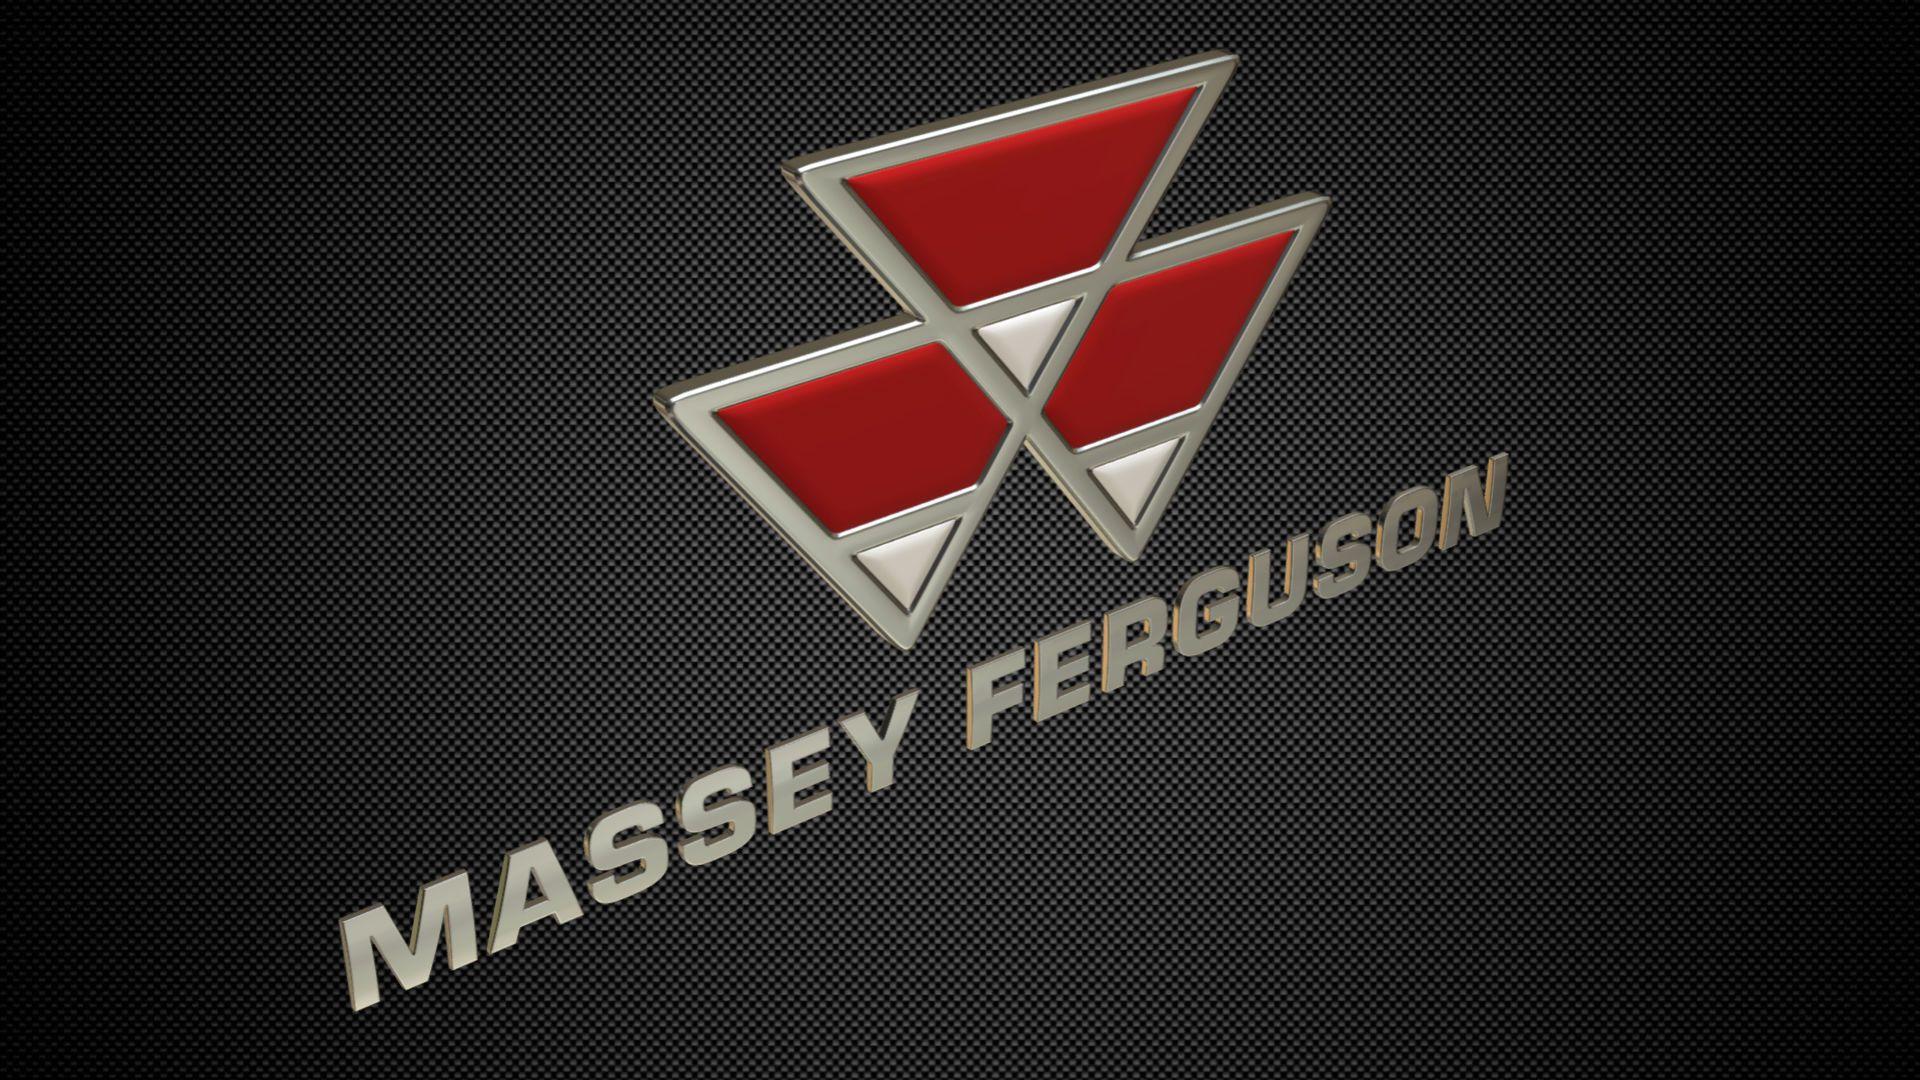 Massey Ferguson Logo - 3D model massey ferguson logo | CGTrader